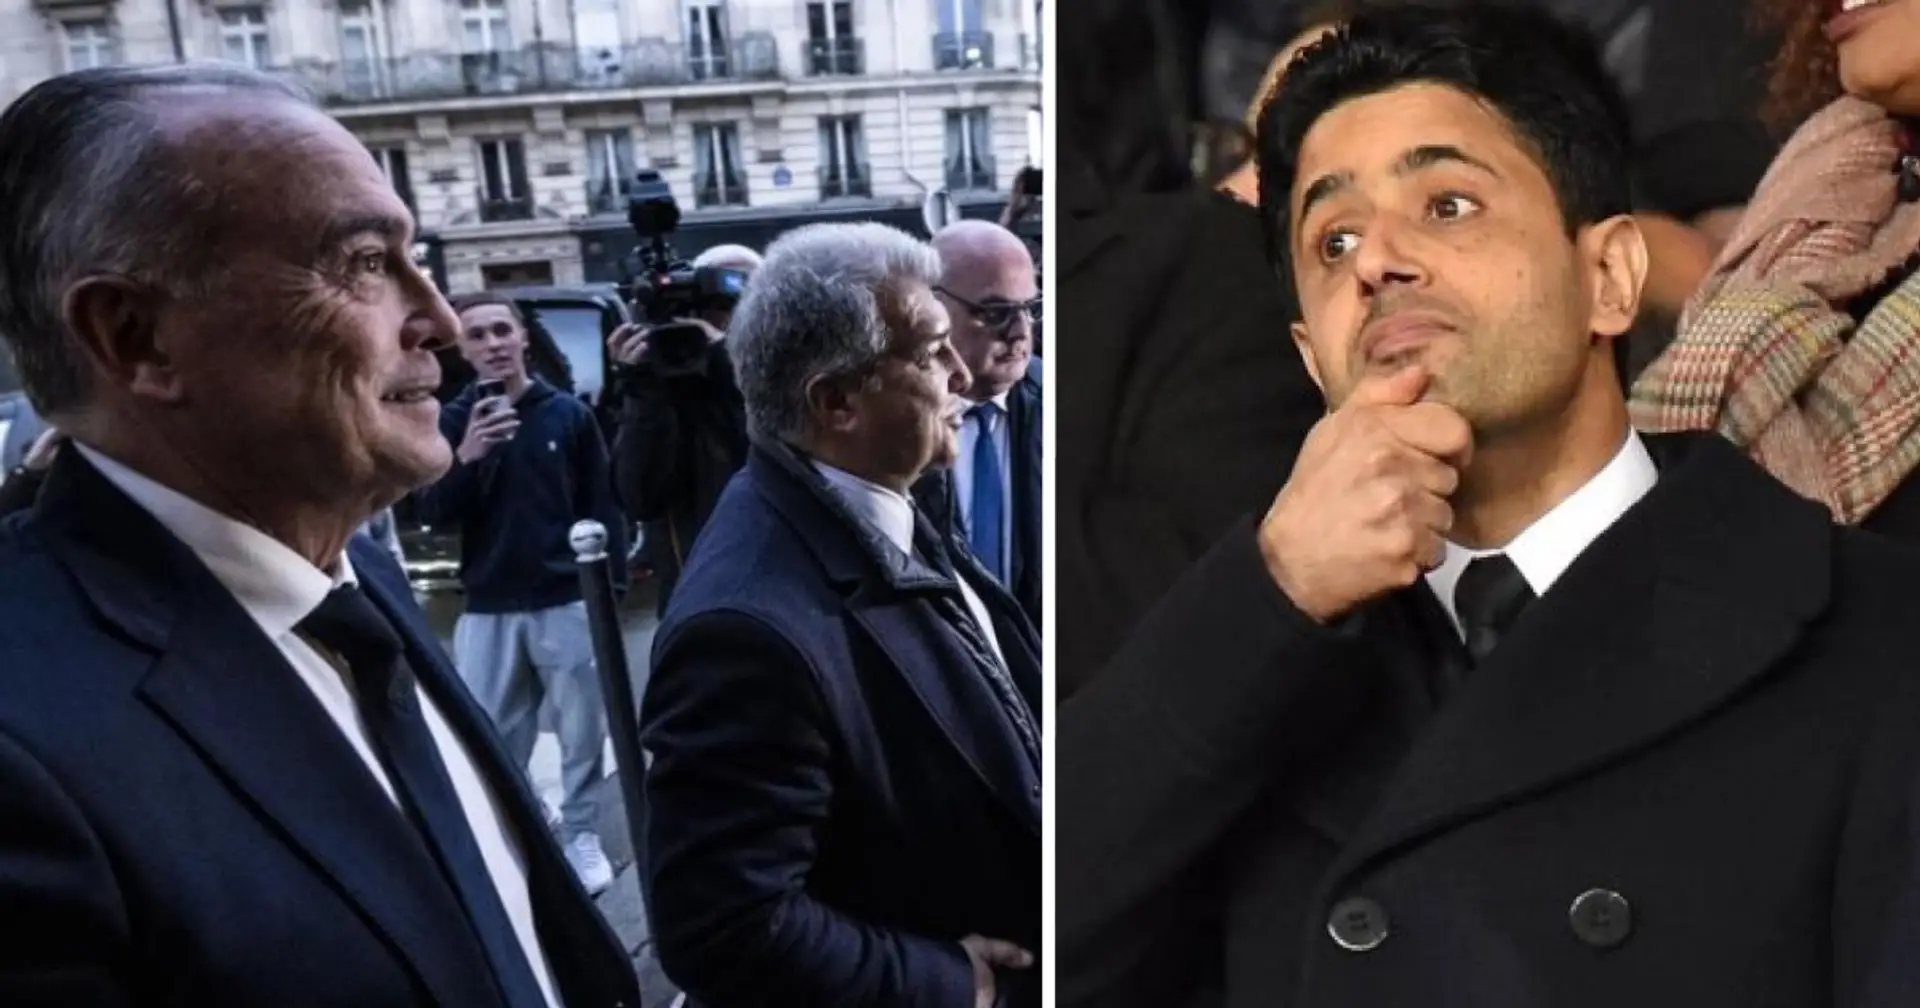 PSG' president Nasser al-Khelaifi skips dinner with Barca officials for religious reason